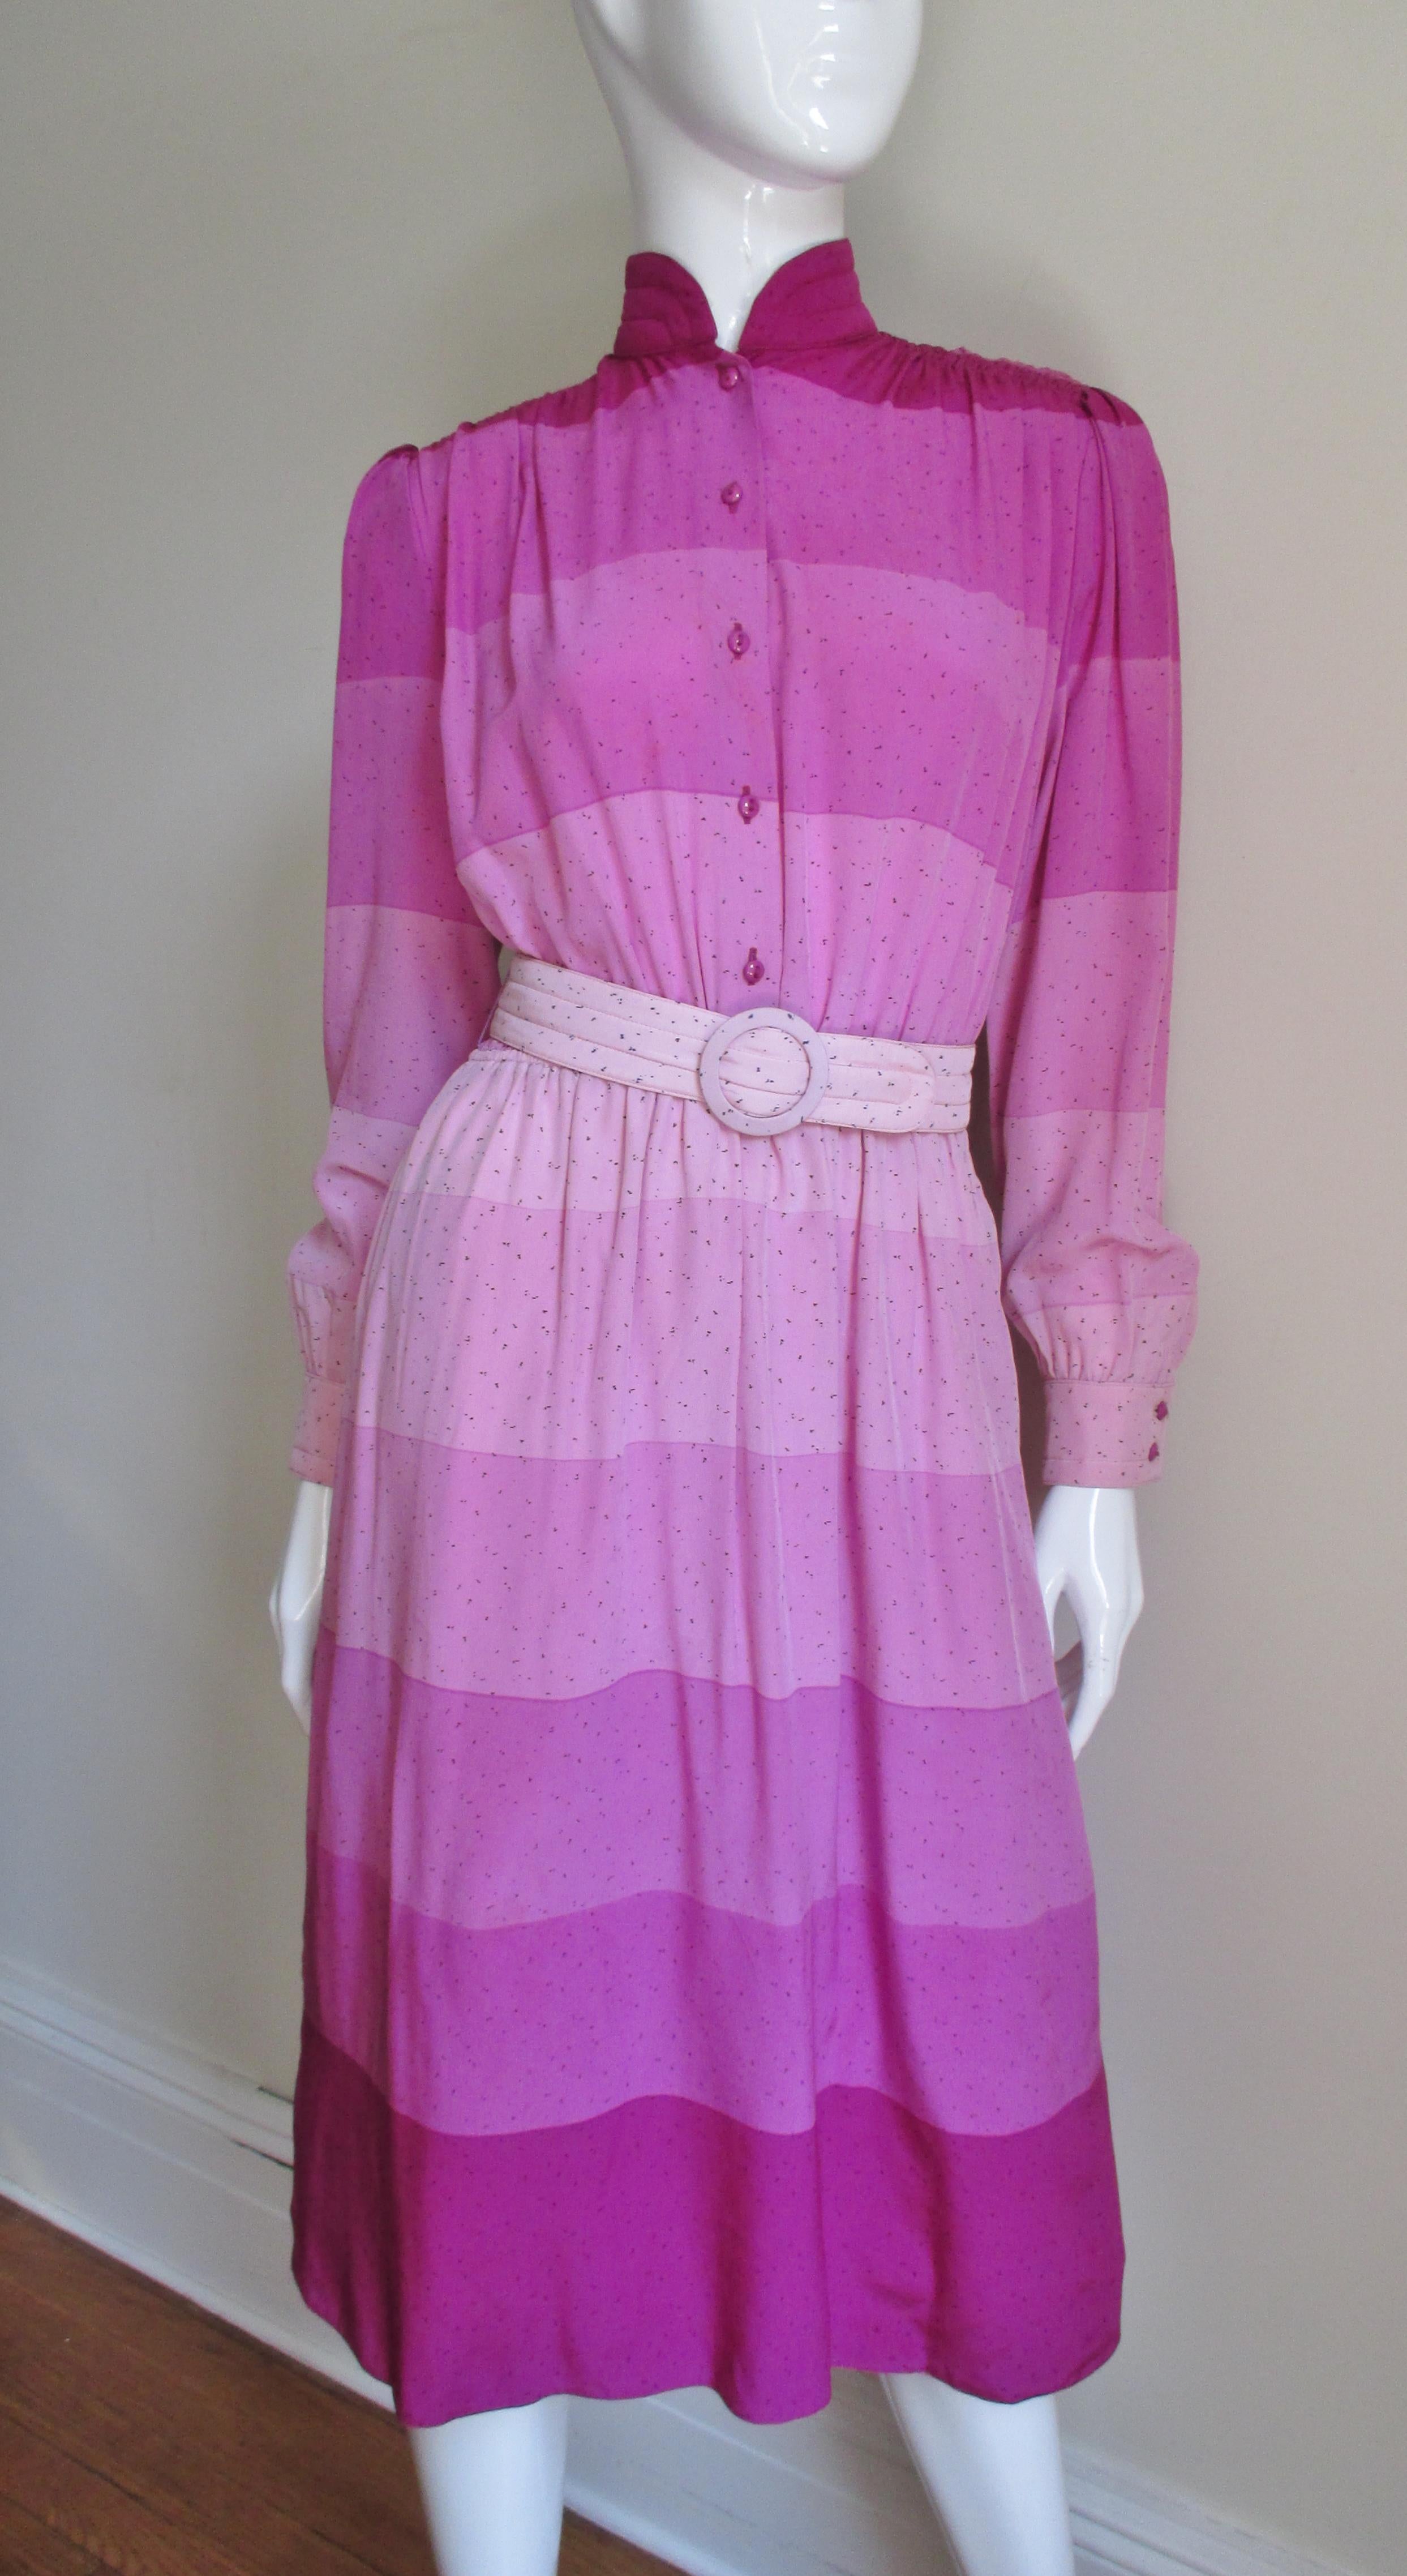 Une belle robe en soie à larges rayures horizontales dégradées dans des tons de rose de Louis Feraud.   Il s'agit d'une chemise à manches longues avec un col montant, des boutons assortis sur le devant et aux poignets, ainsi qu'une ceinture